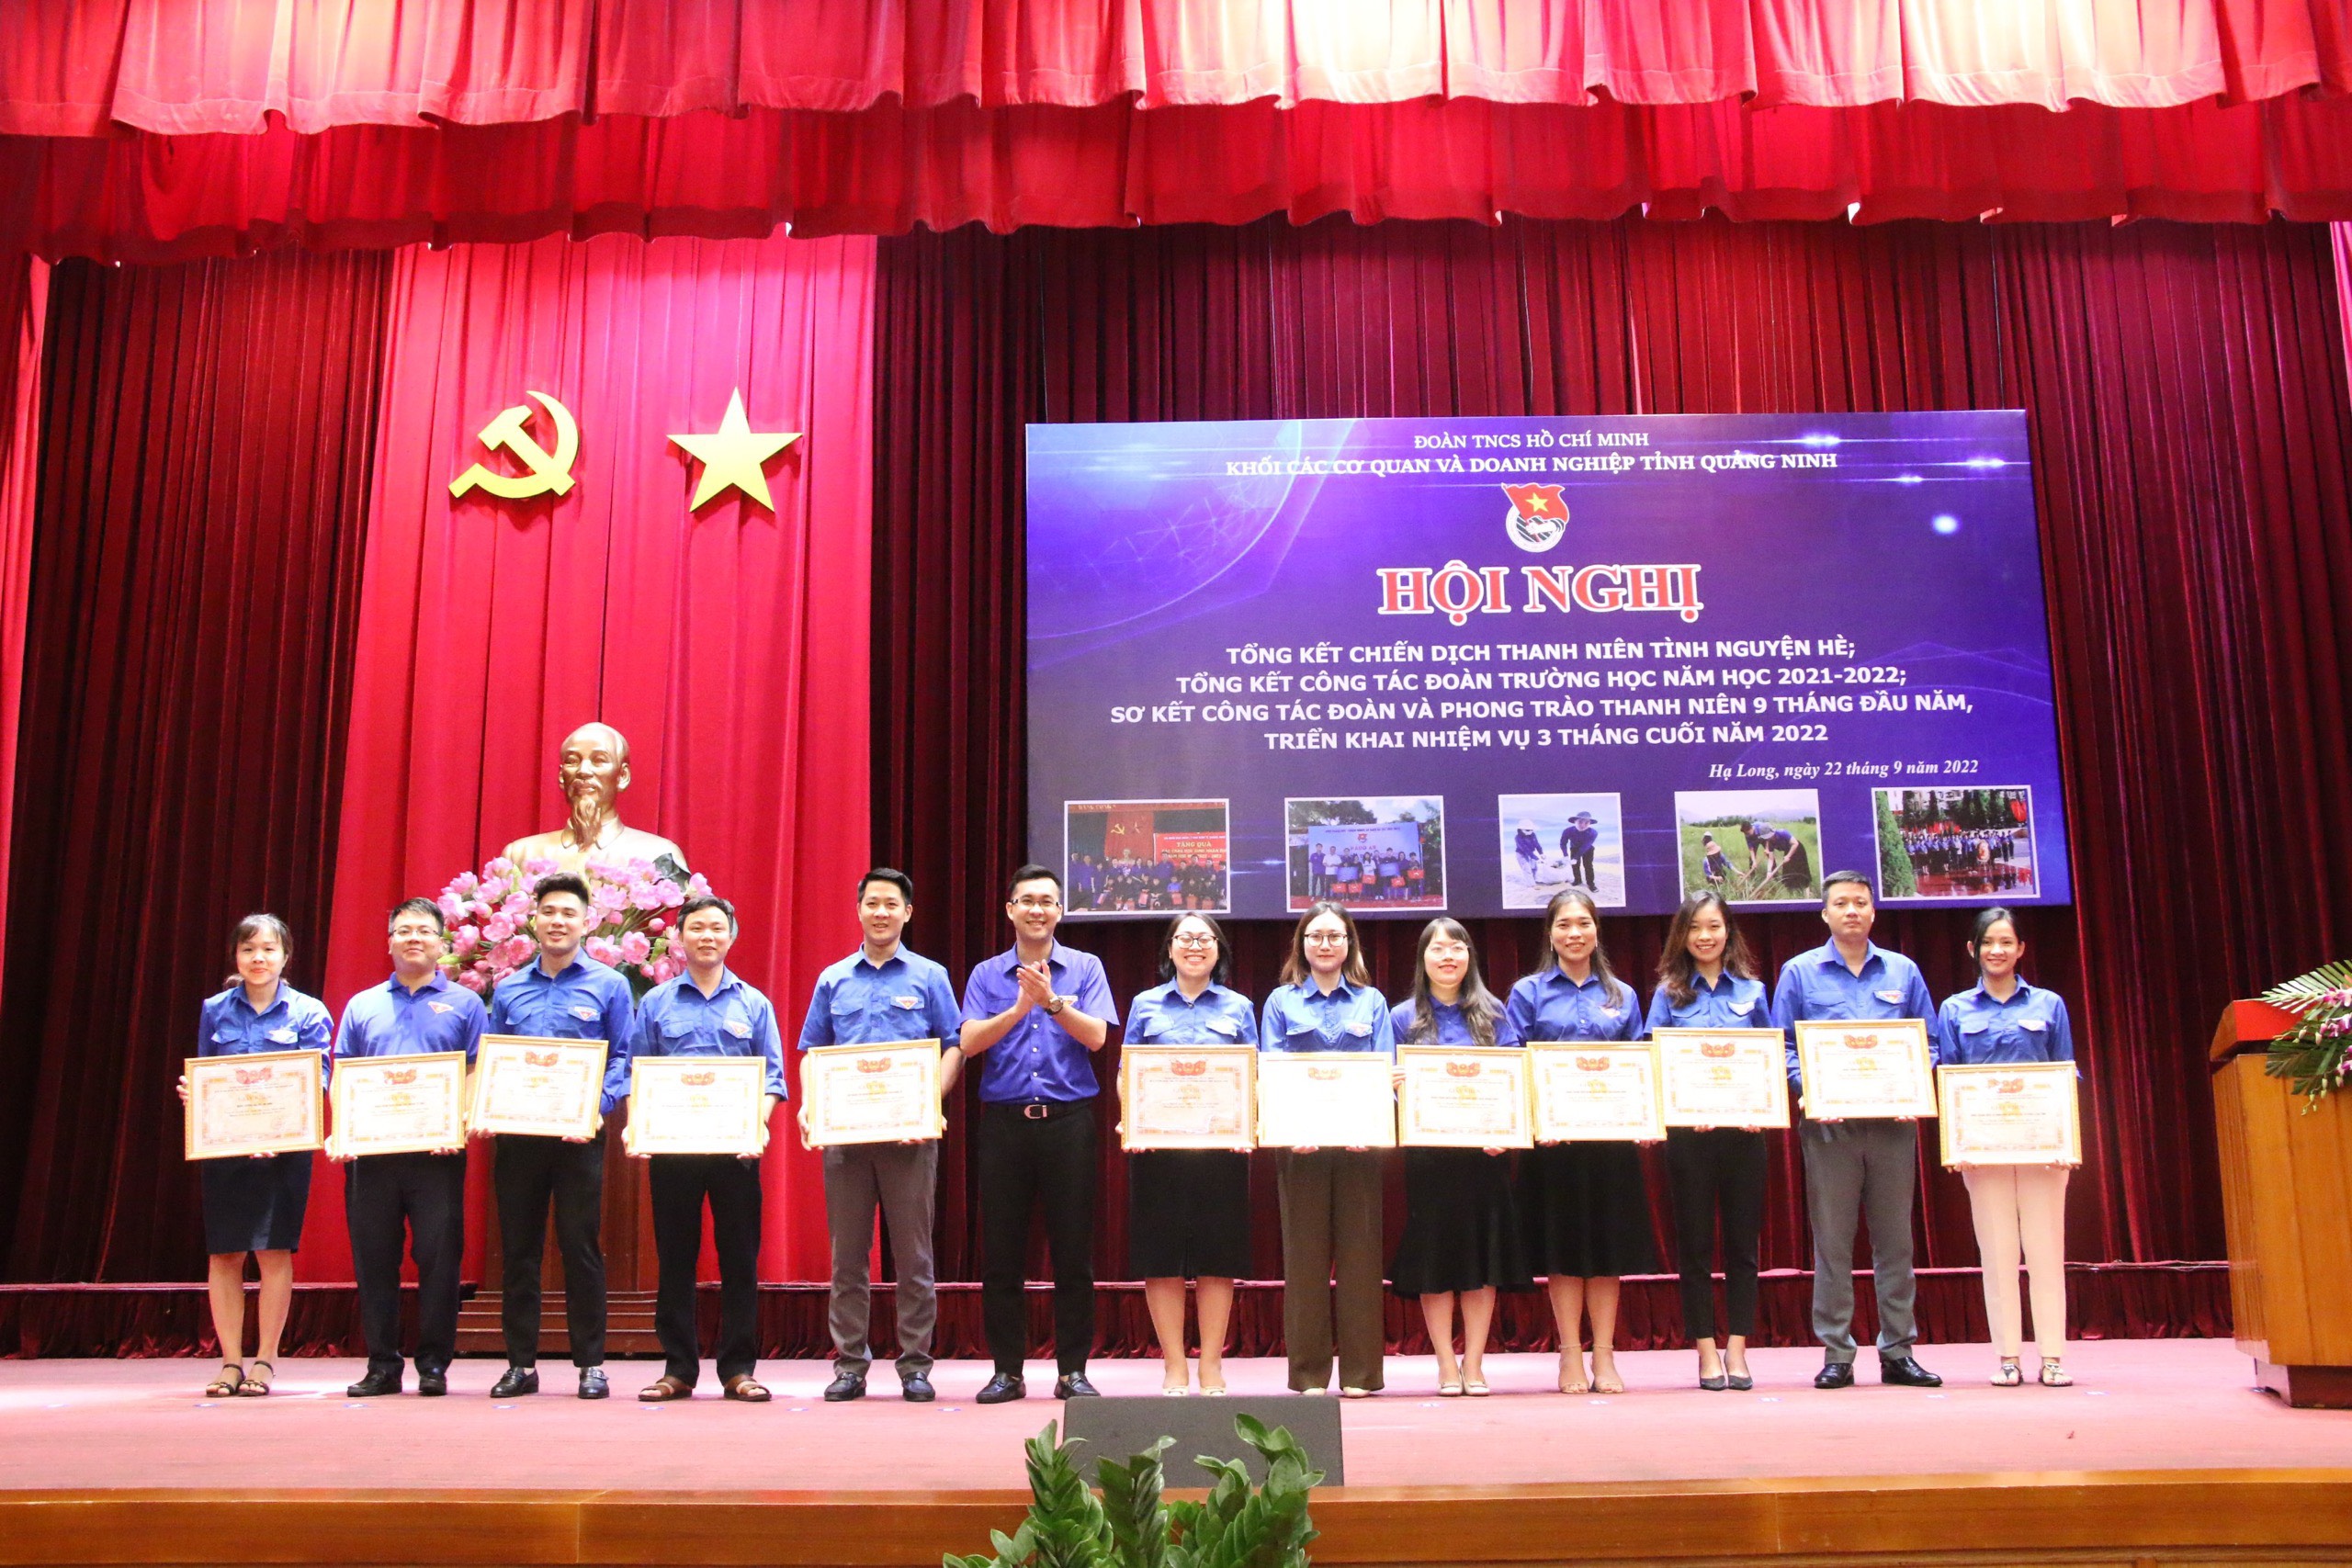 Chi đoàn trường Đào tạo cán bộ Nguyễn Văn Cừ vinh dự được nhận Giấy khen của BCH Đoàn Khối các cơ quan và doanh nghiệp tỉnh Quảng Ninh